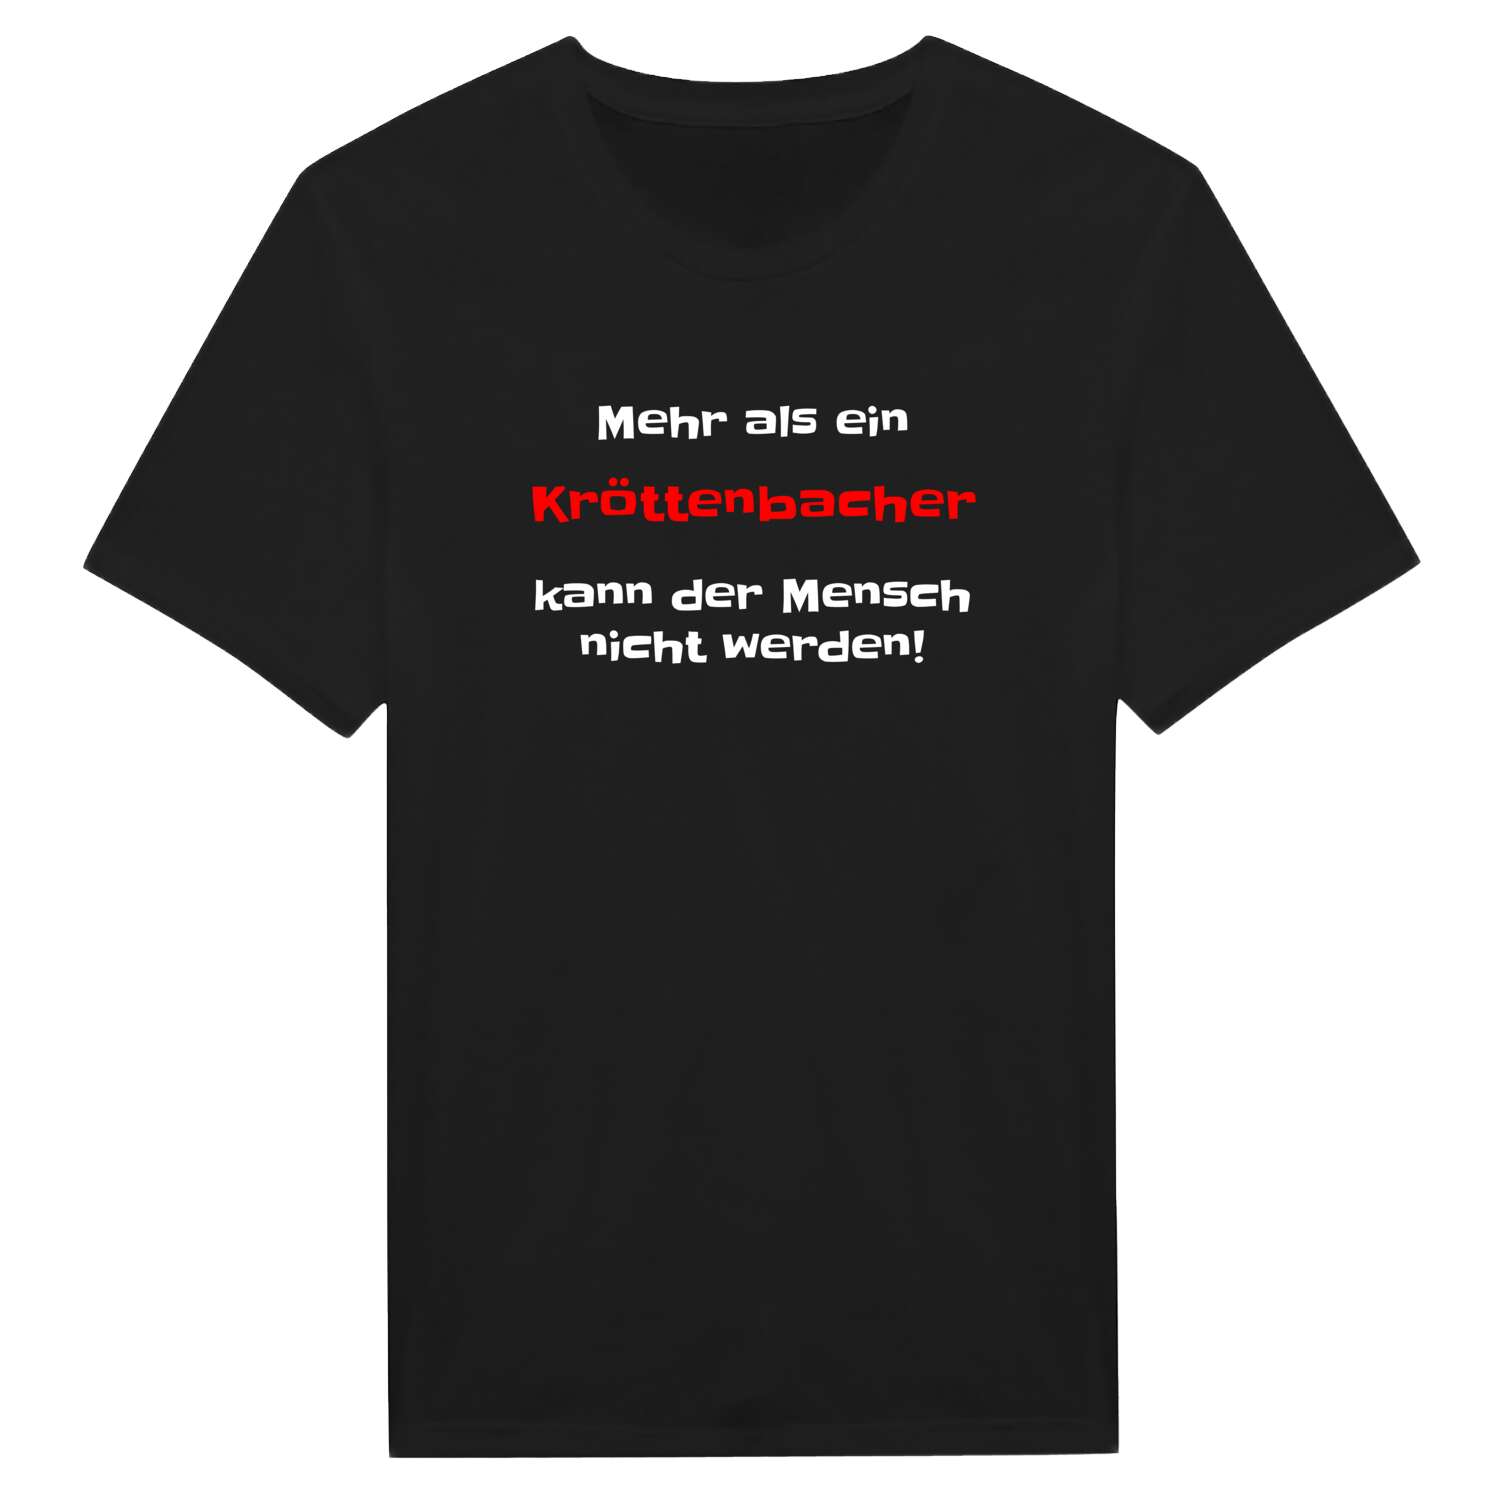 Kröttenbach T-Shirt »Mehr als ein«